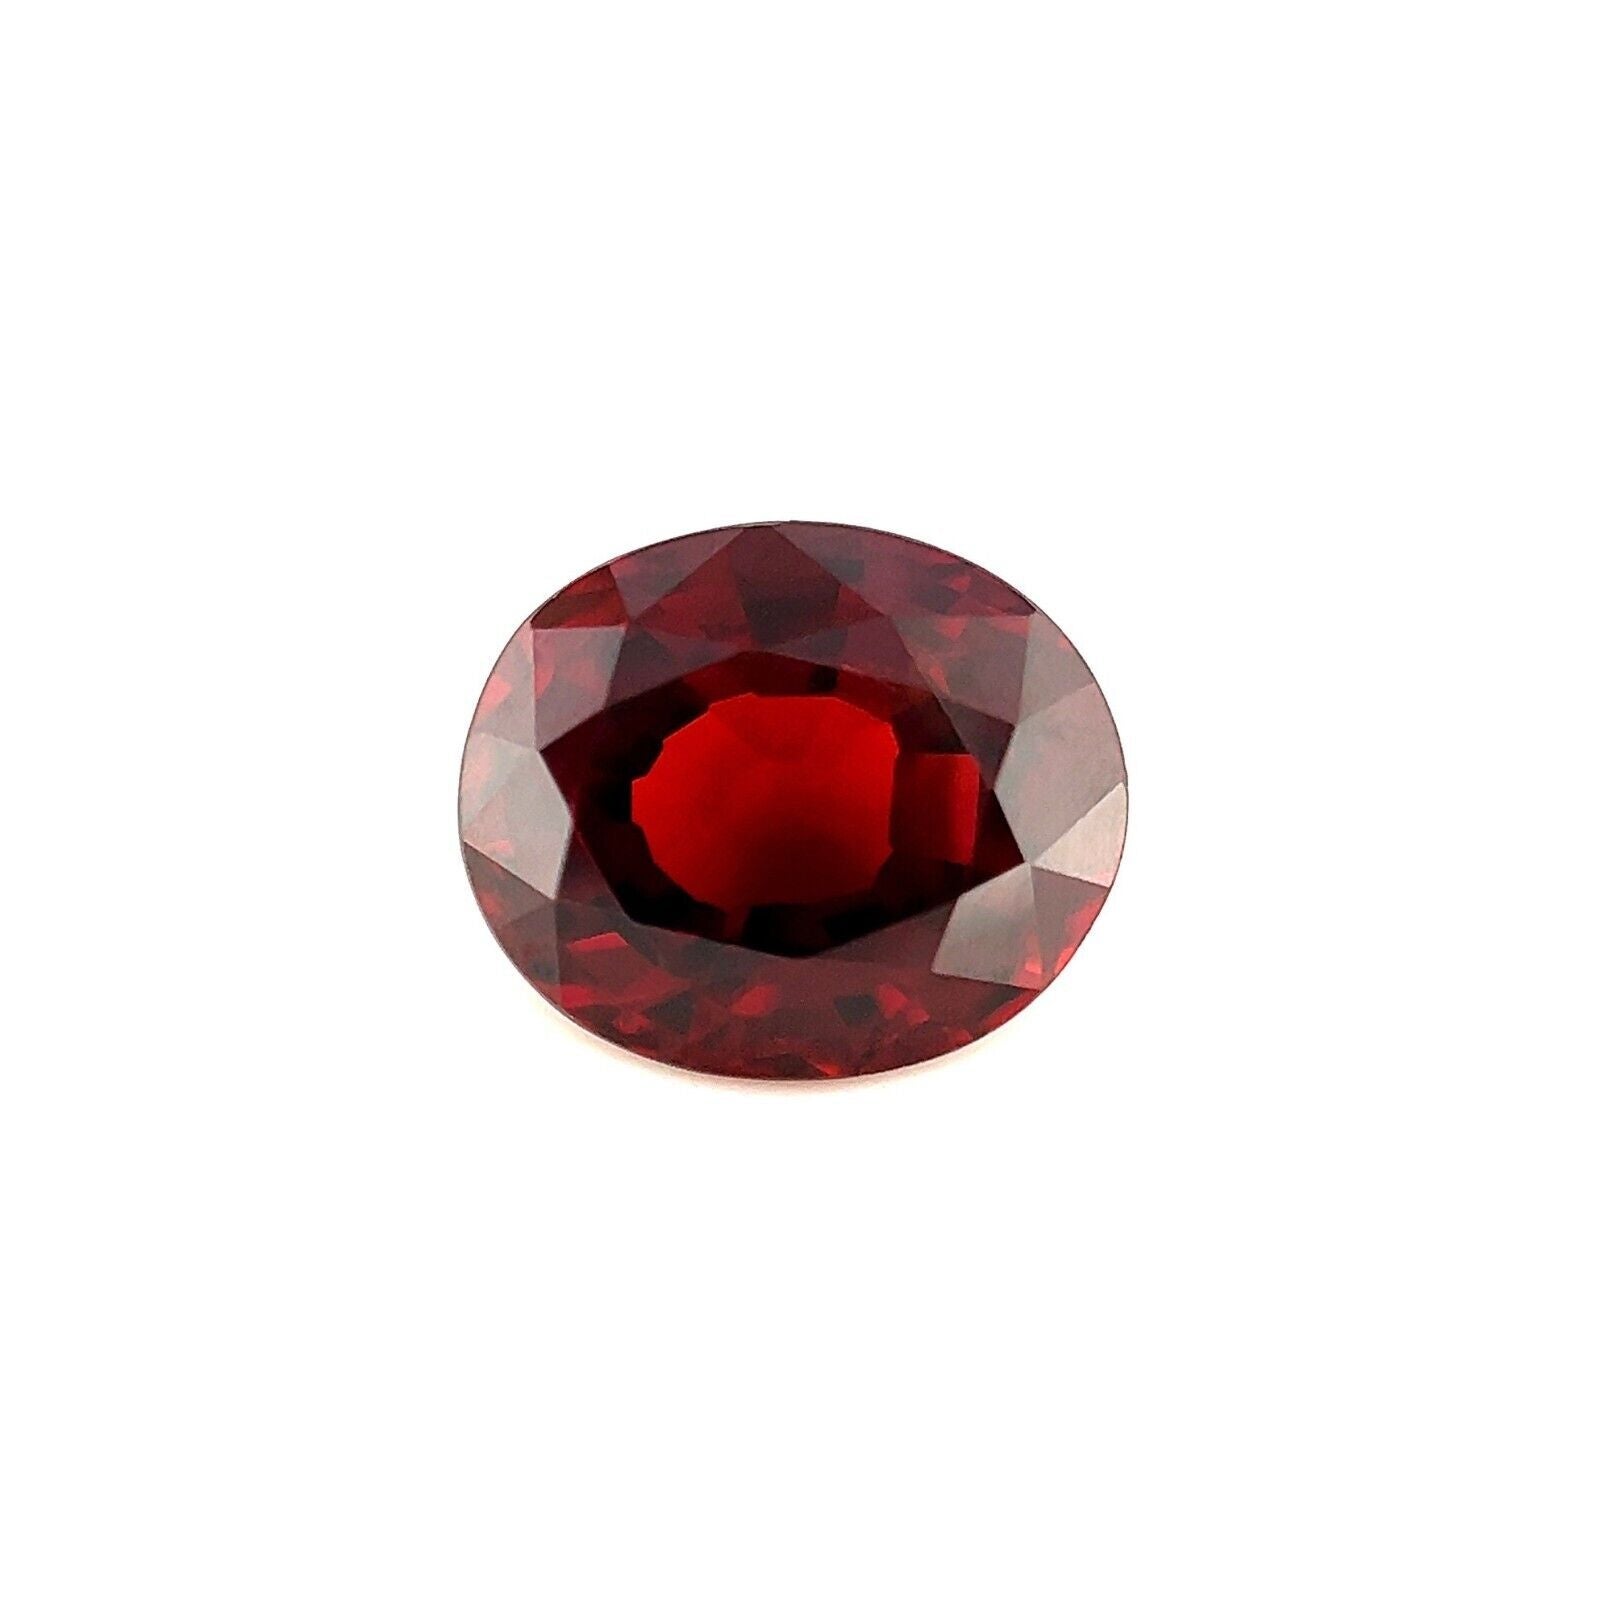 Deep Orange Red Spessartite Garnet 2.36ct Oval Cut Loose Gemstone VVS For Sale